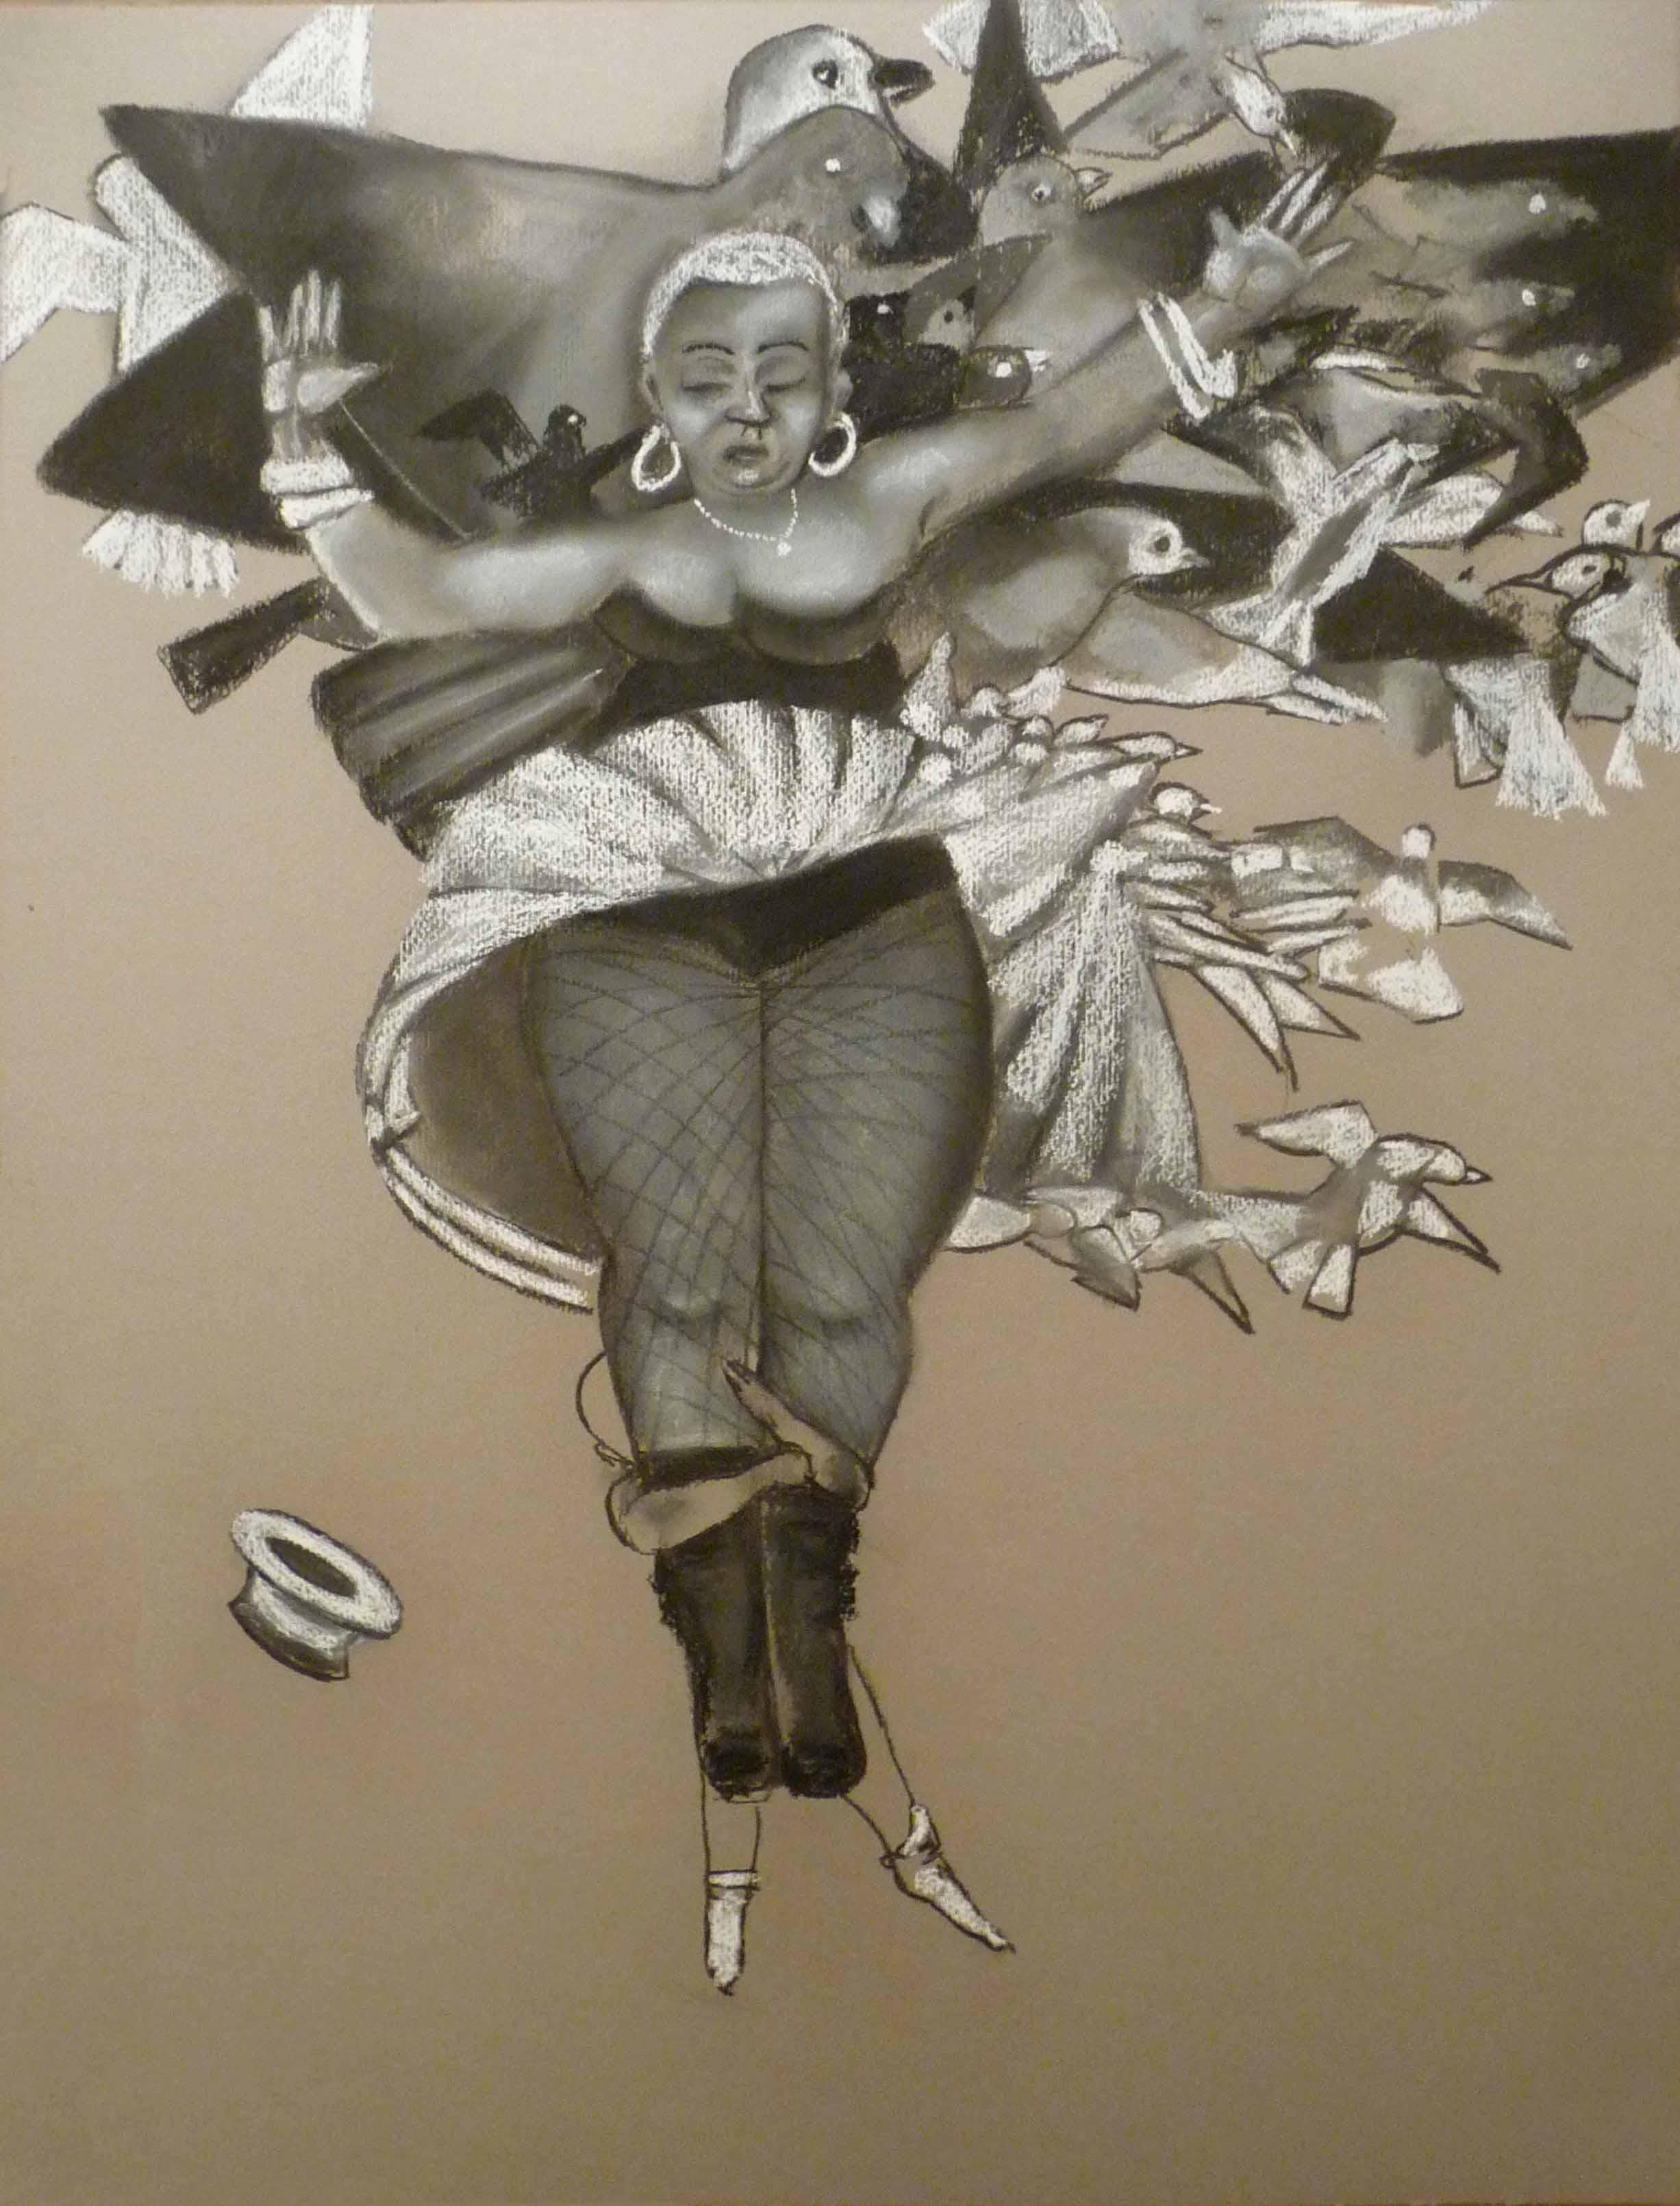 Stephen Basso Figurative Art – Leichter als Luft große monochromatische weibliche Figur in Holzkohle mit Vögeln in warmem Grau